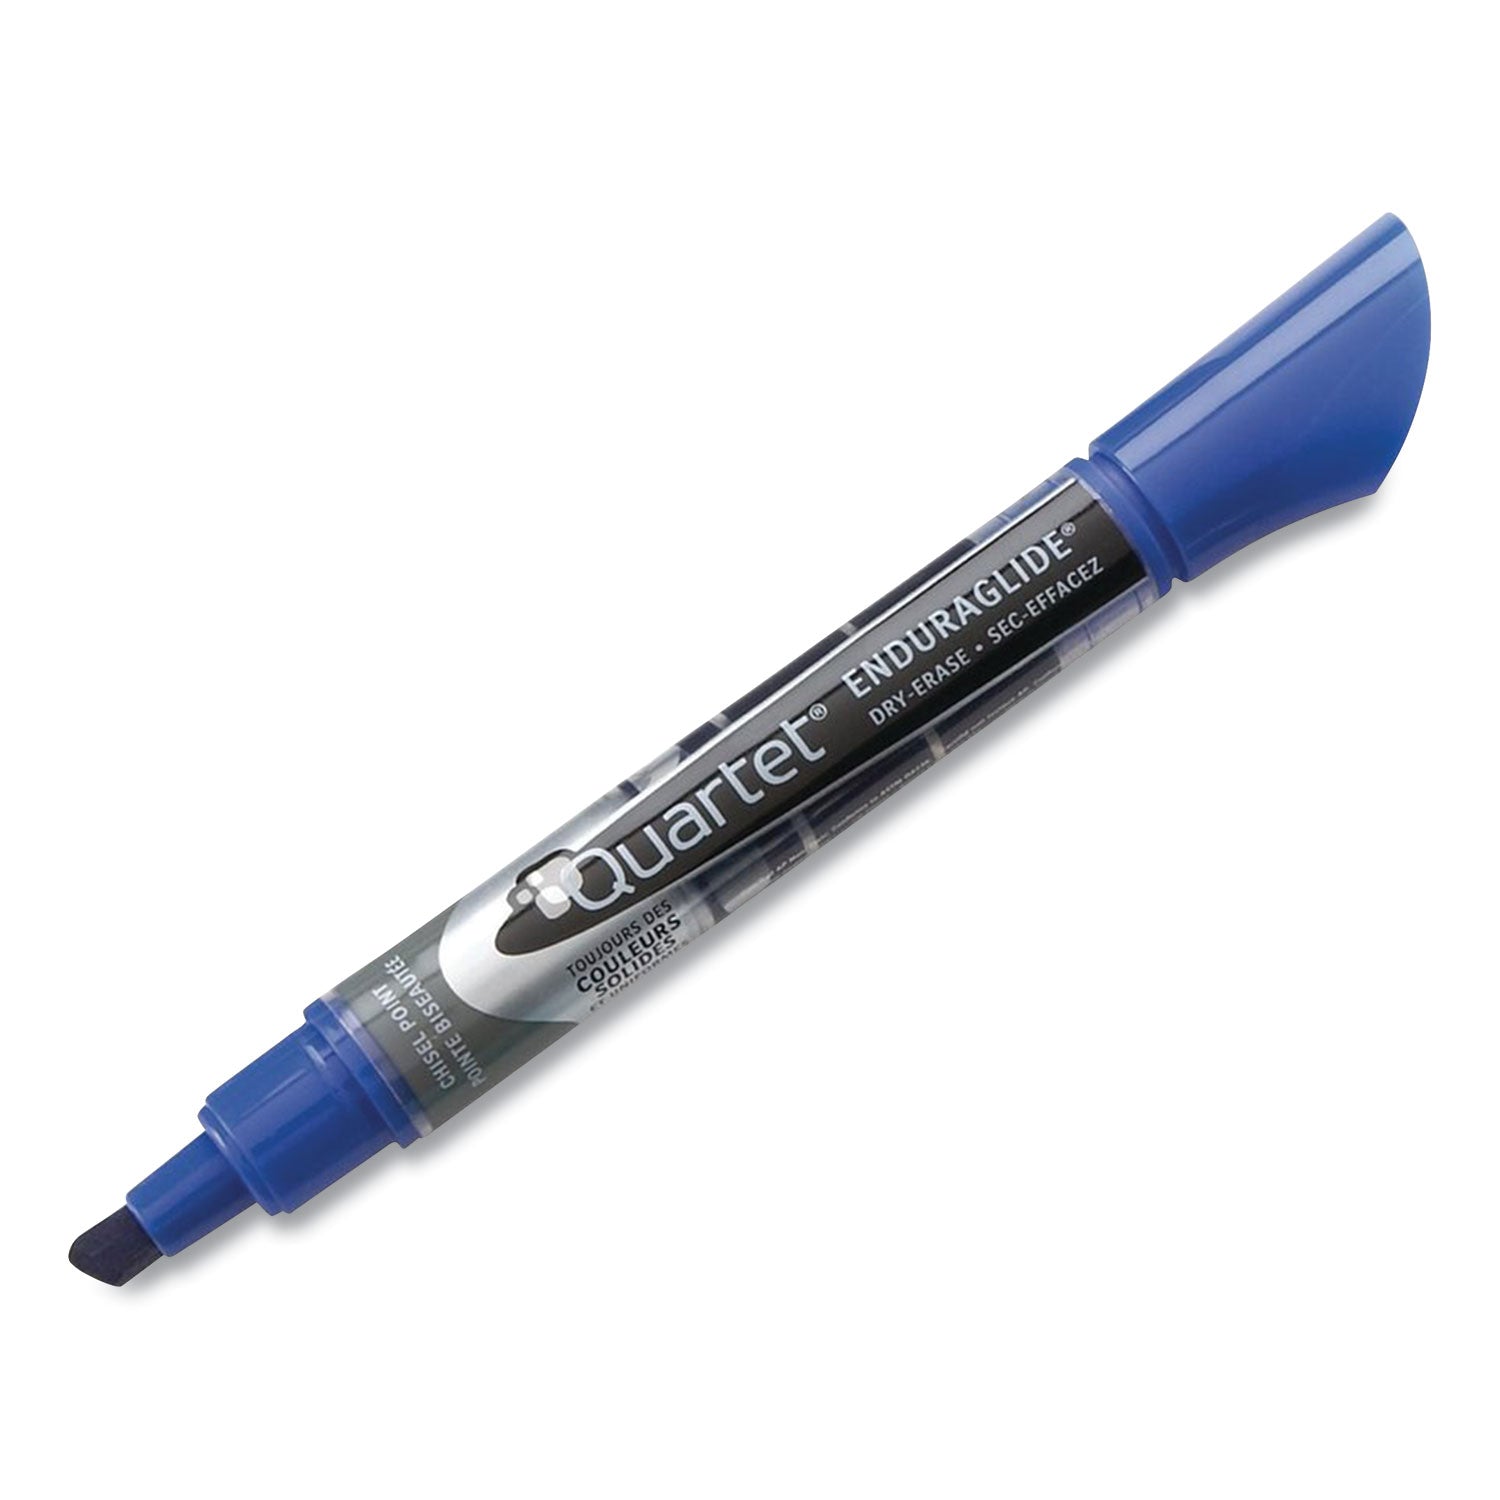 enduraglide-dry-erase-marker-kit-with-cleaner-and-eraser-broad-chisel-tip-assorted-colors-4-pack_qrt5001m4sk - 2